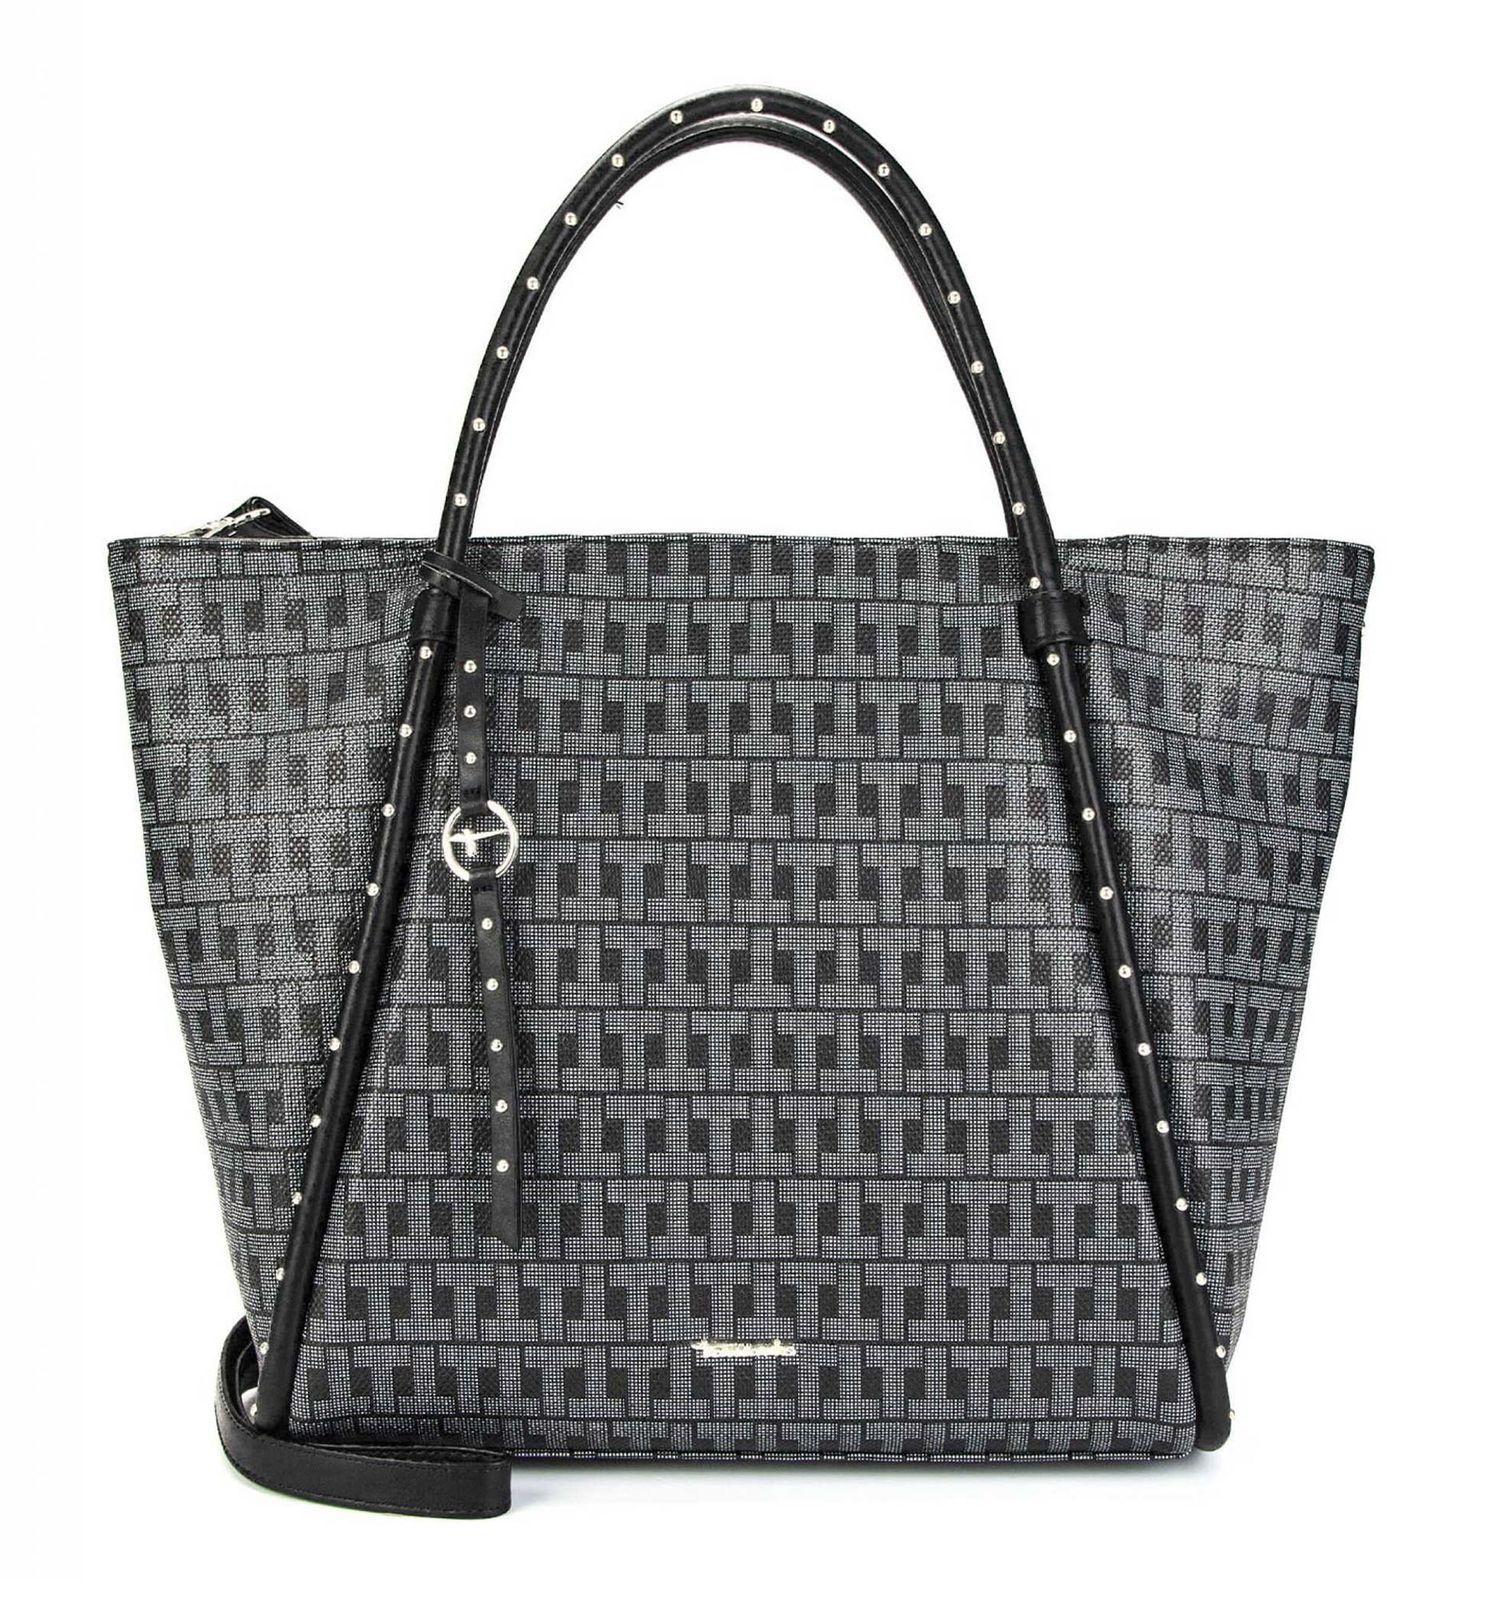 Tamaris Shopper Linn Shopper Black | Buy bags, purses & accessories ...